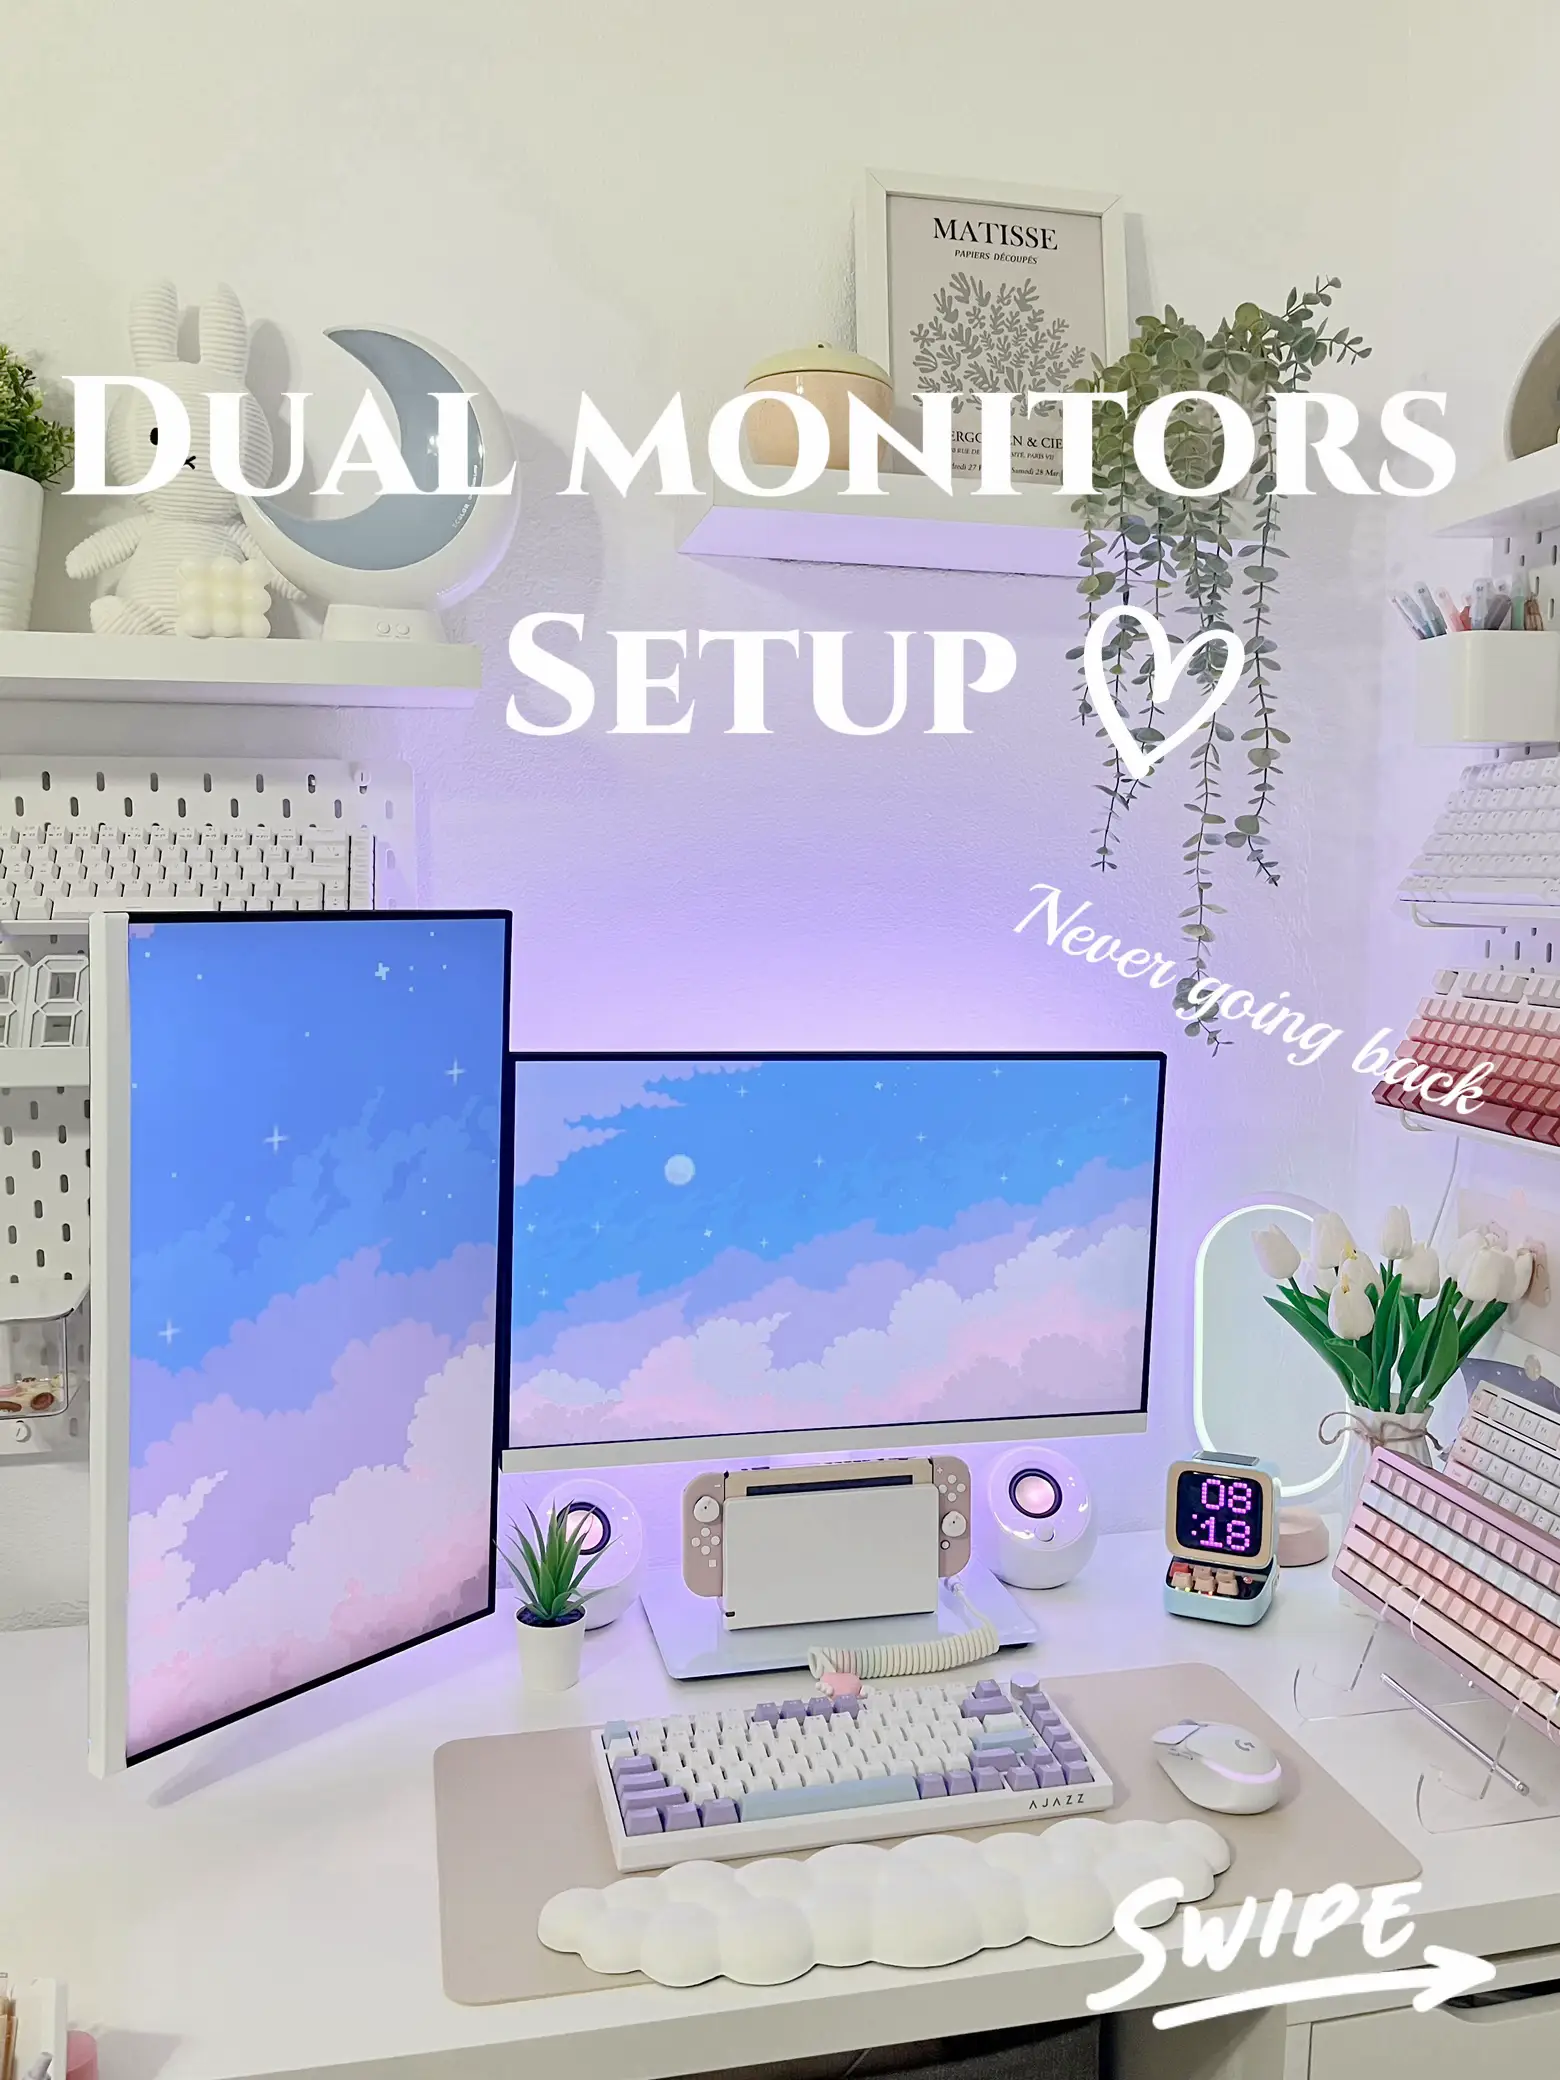 Dual Monitor Gaming Setup: How to Setup Dual Monitors for Gaming